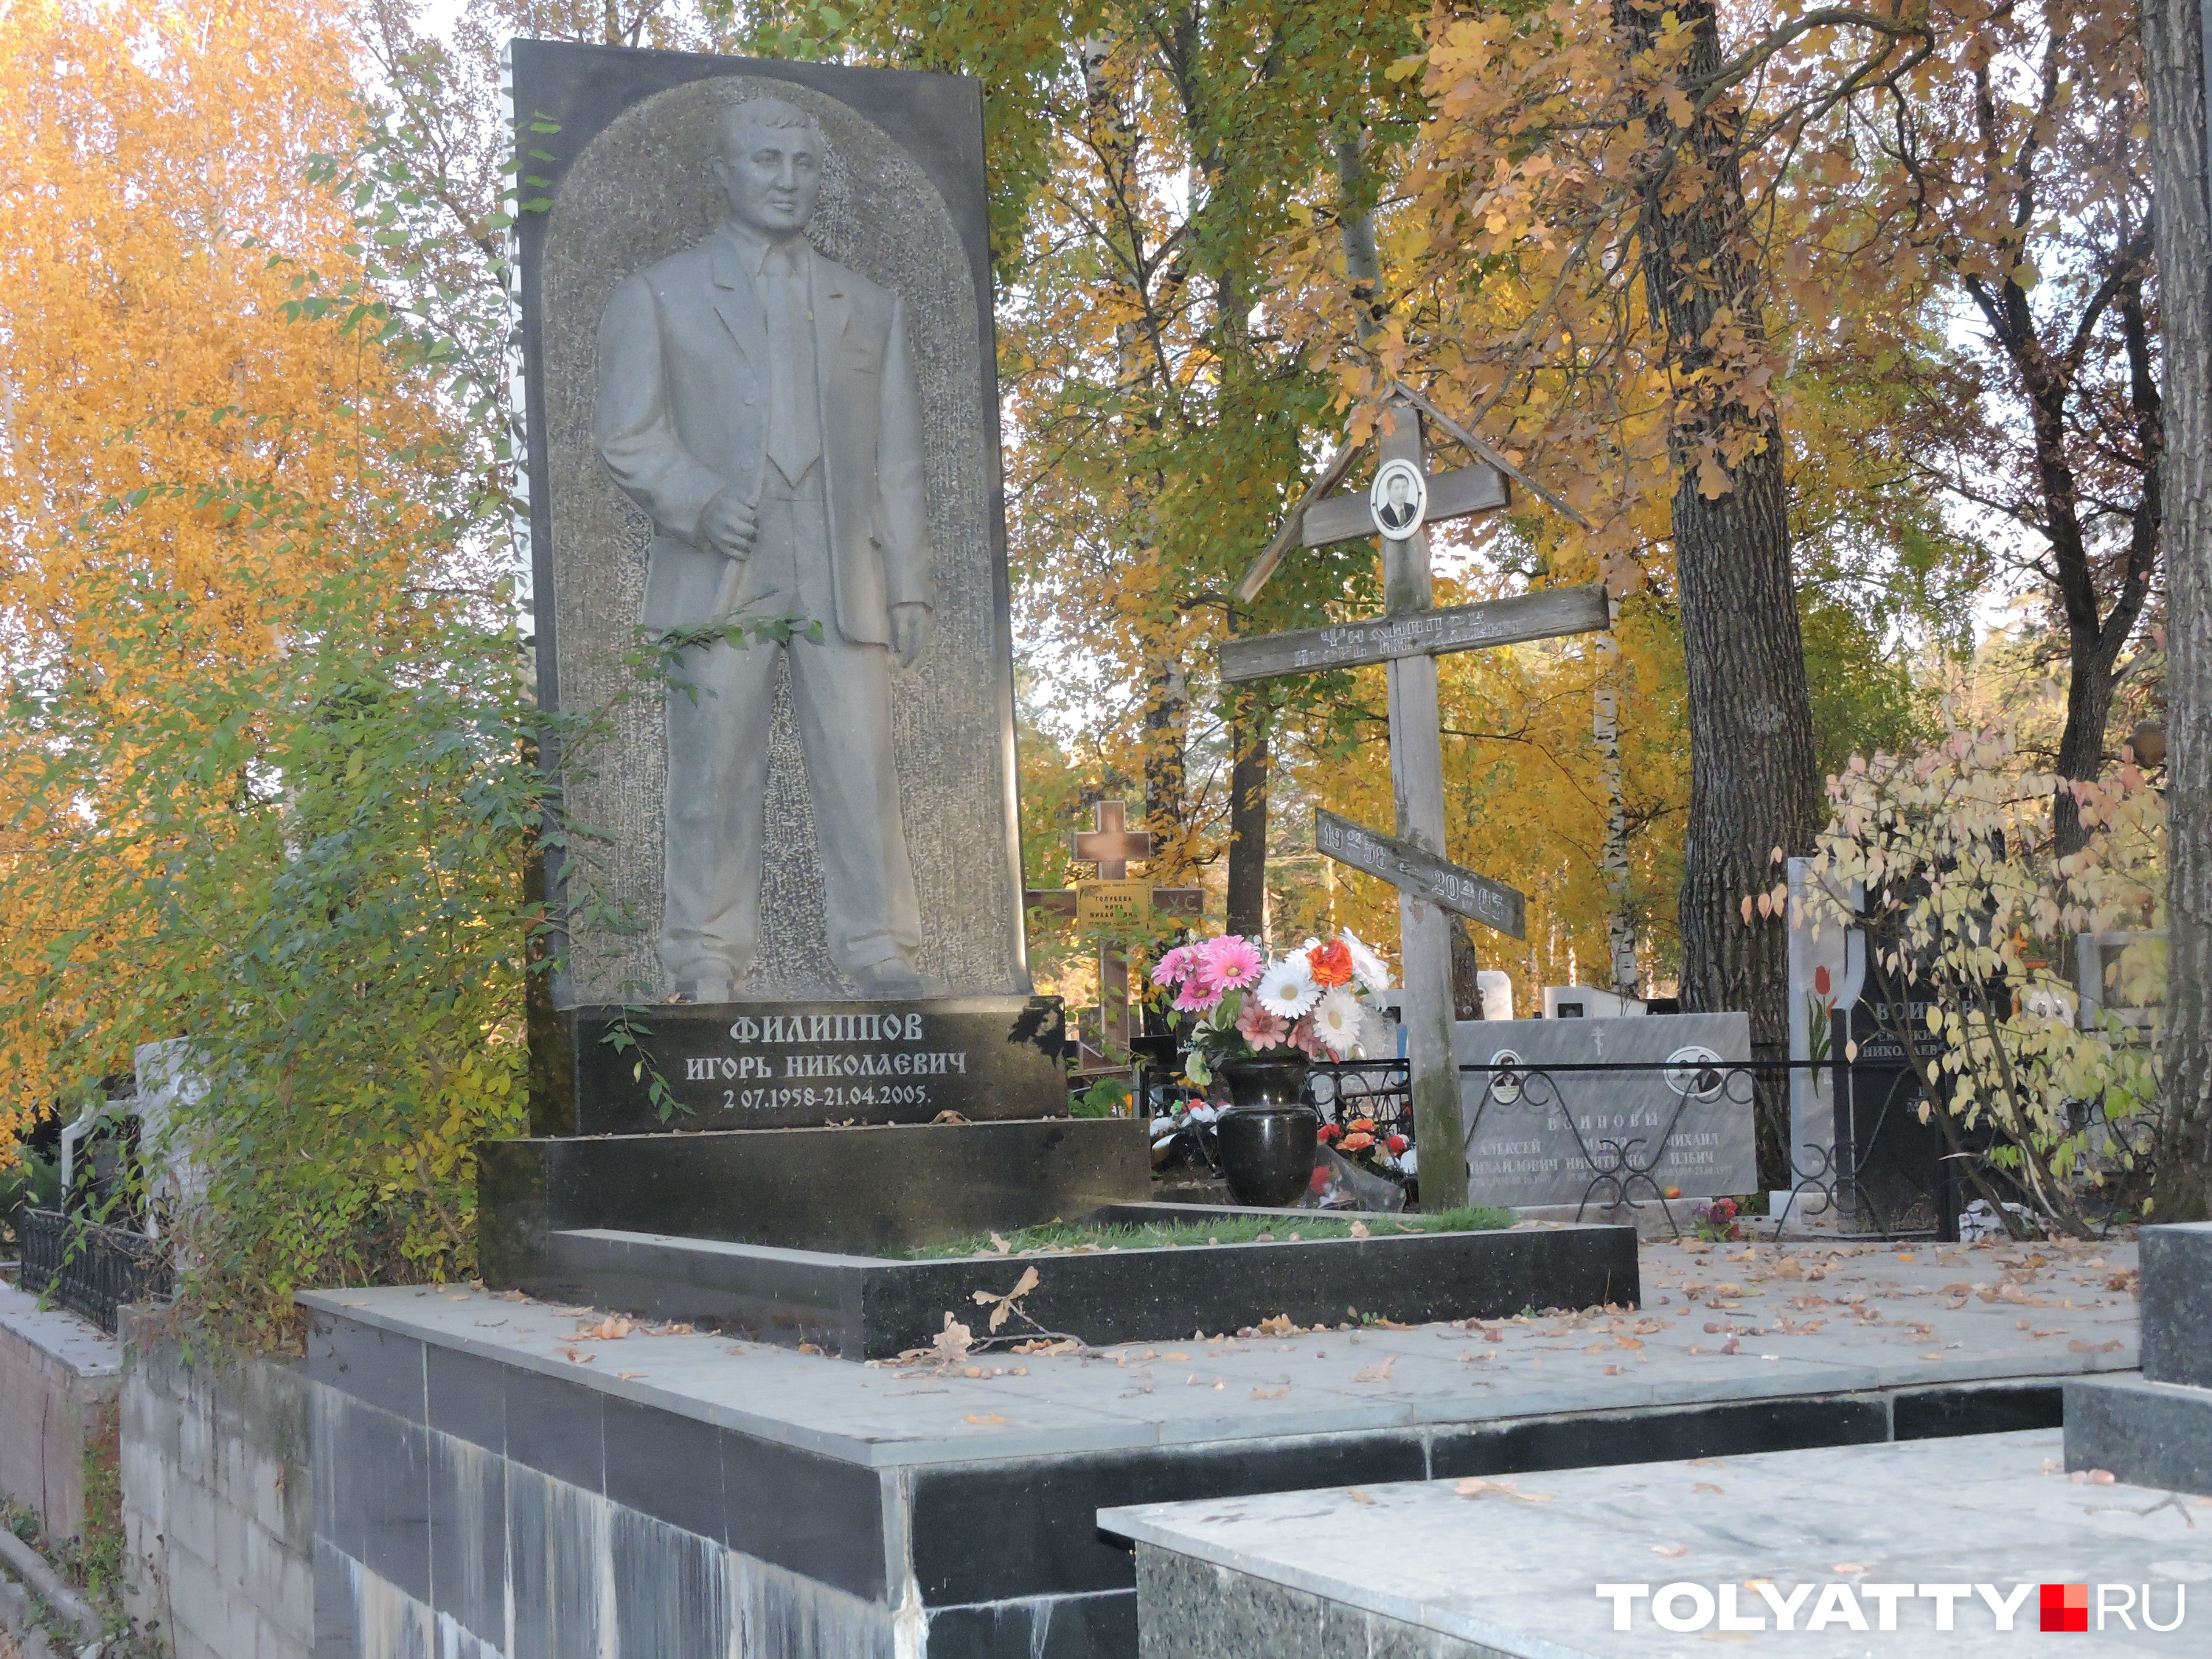 Смотрящий Тольятти стоит на видном месте — на боковой аллее кладбища. Памятник заметен еще издалека и создается ощущение, что Филиппок всё еще внимательно смотрит за окрестностями.